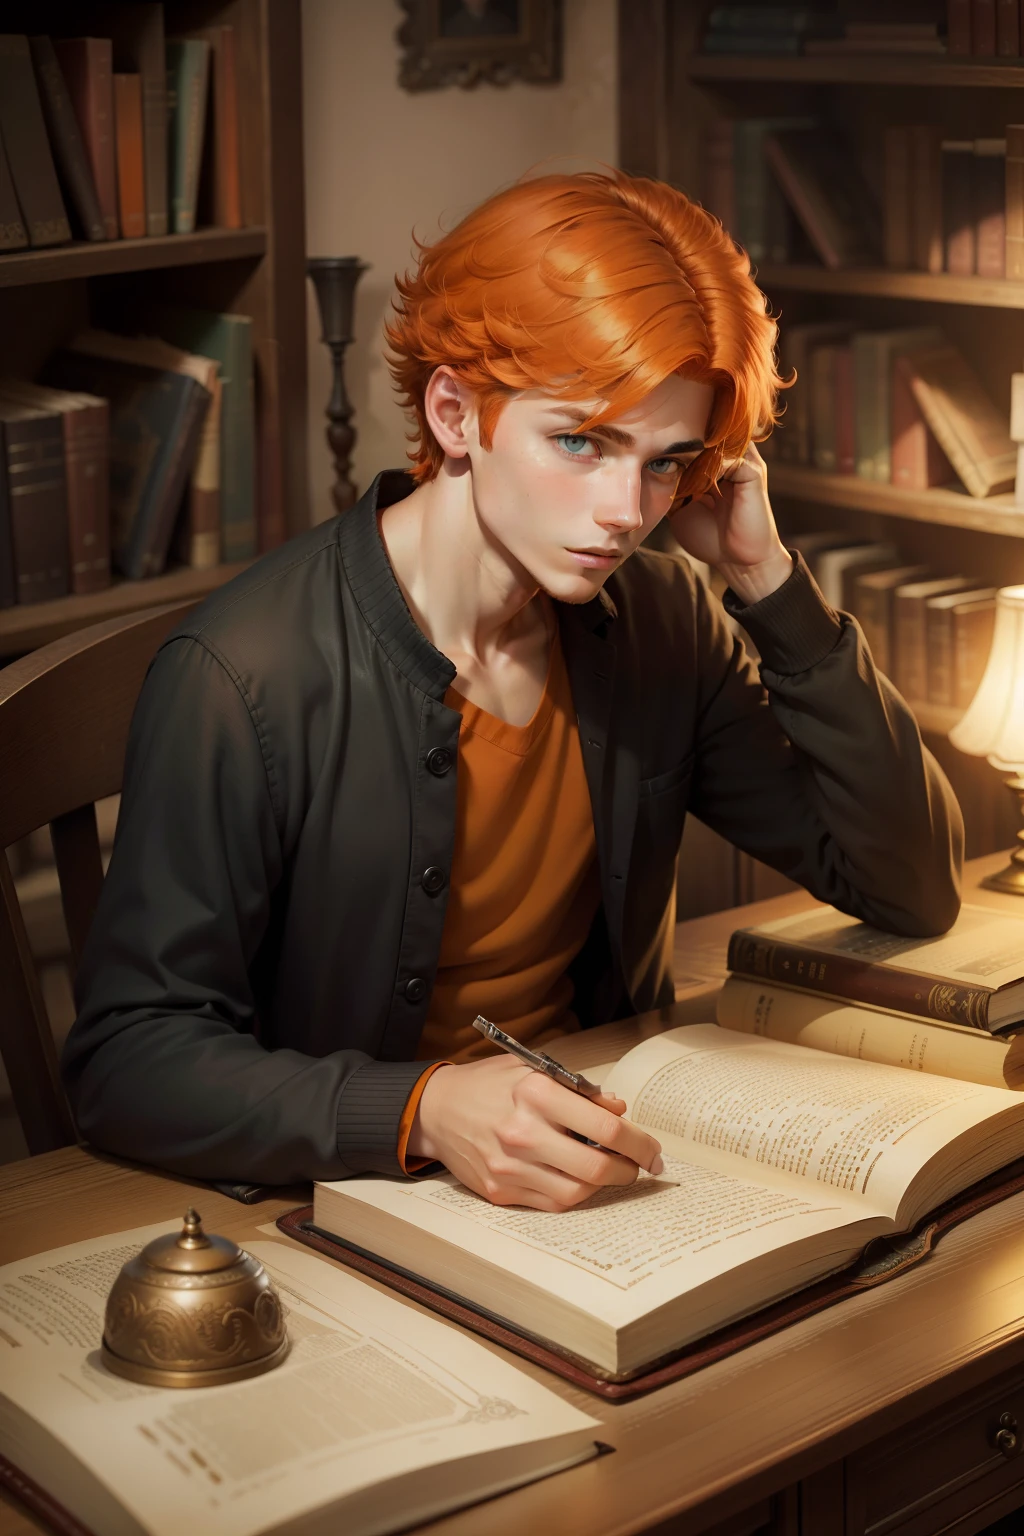 شاب جميل يبلغ من العمر 17 عامًا، ذو شعر برتقالي وعينين برتقاليتين، ينظر إلى صفحات كتاب قديم